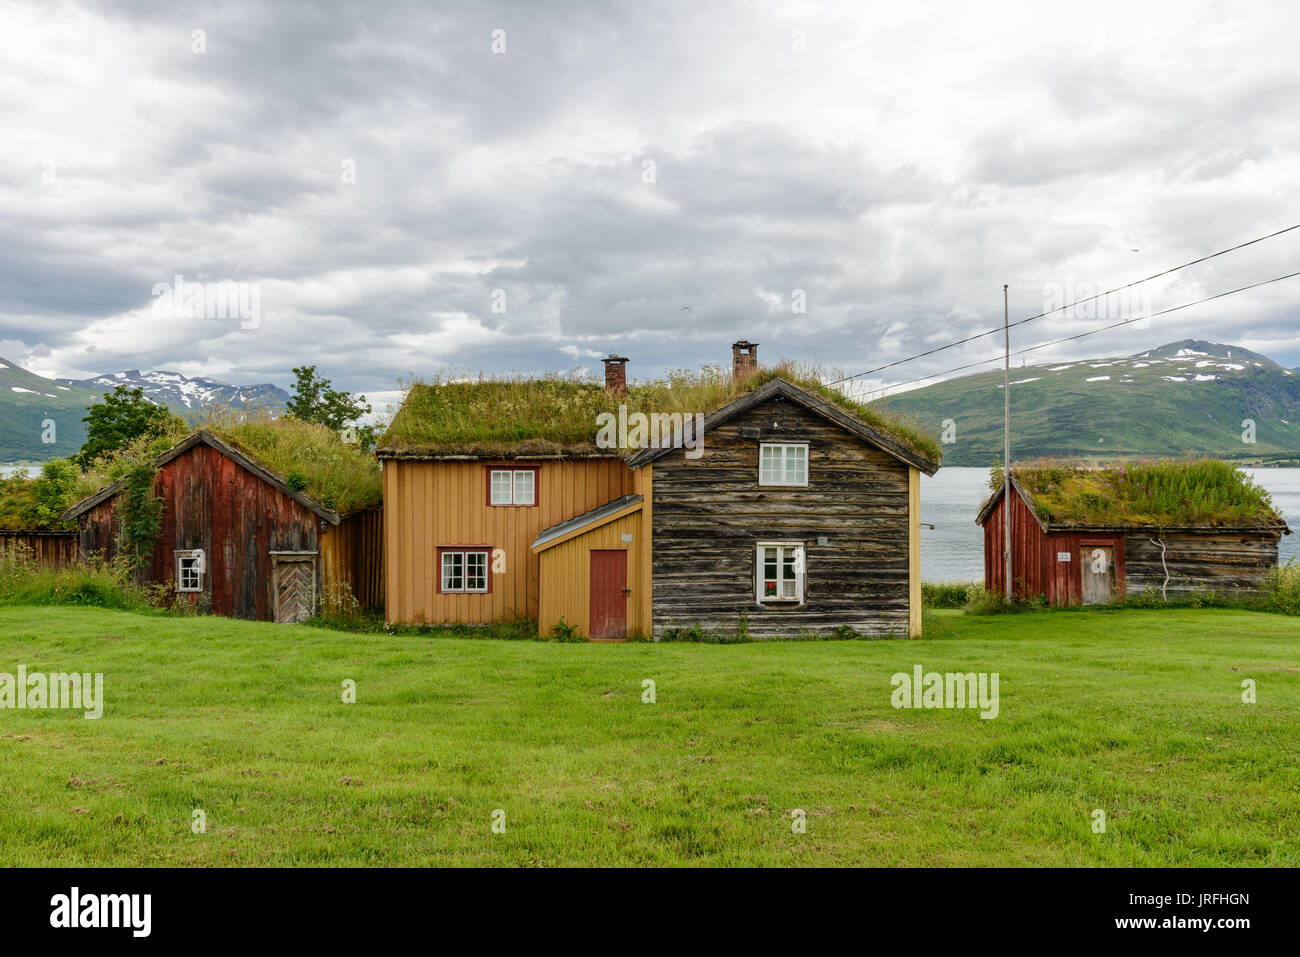 Photo prise à Straumen gård - ancienne ferme conservé comme musée local. Straumsbukta, Kvaløya, Tromsø, Norvège. Banque D'Images